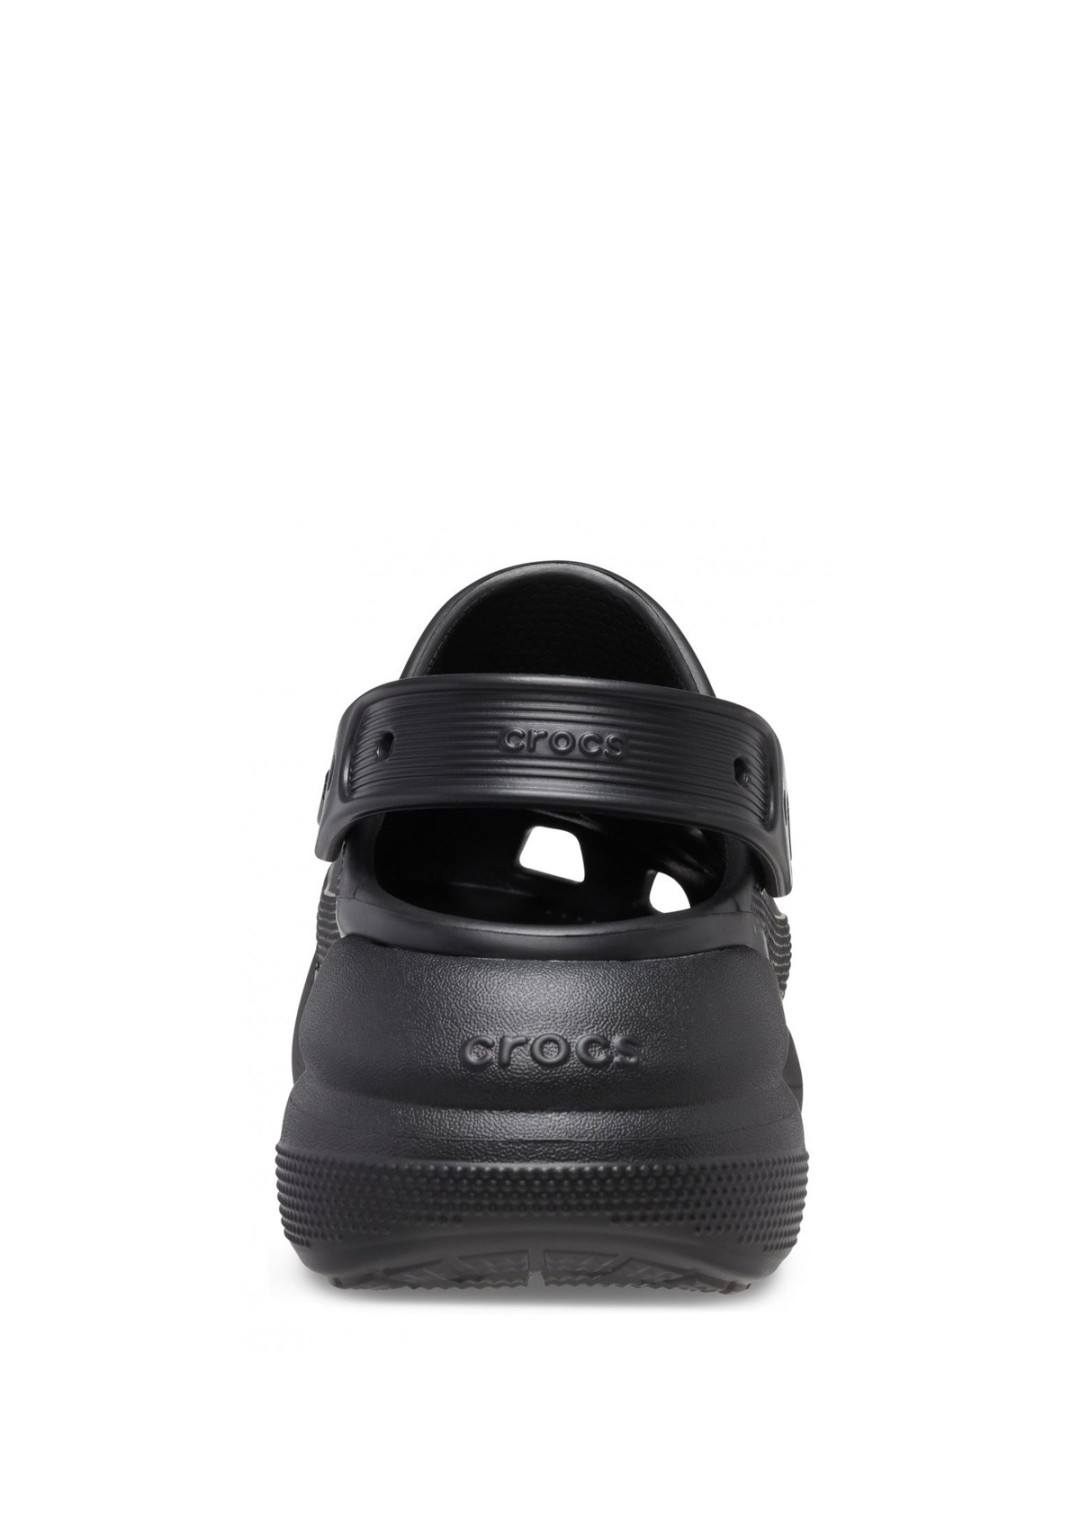 Crocs - Crocs F.Alto - Unisex - 207521/BLK